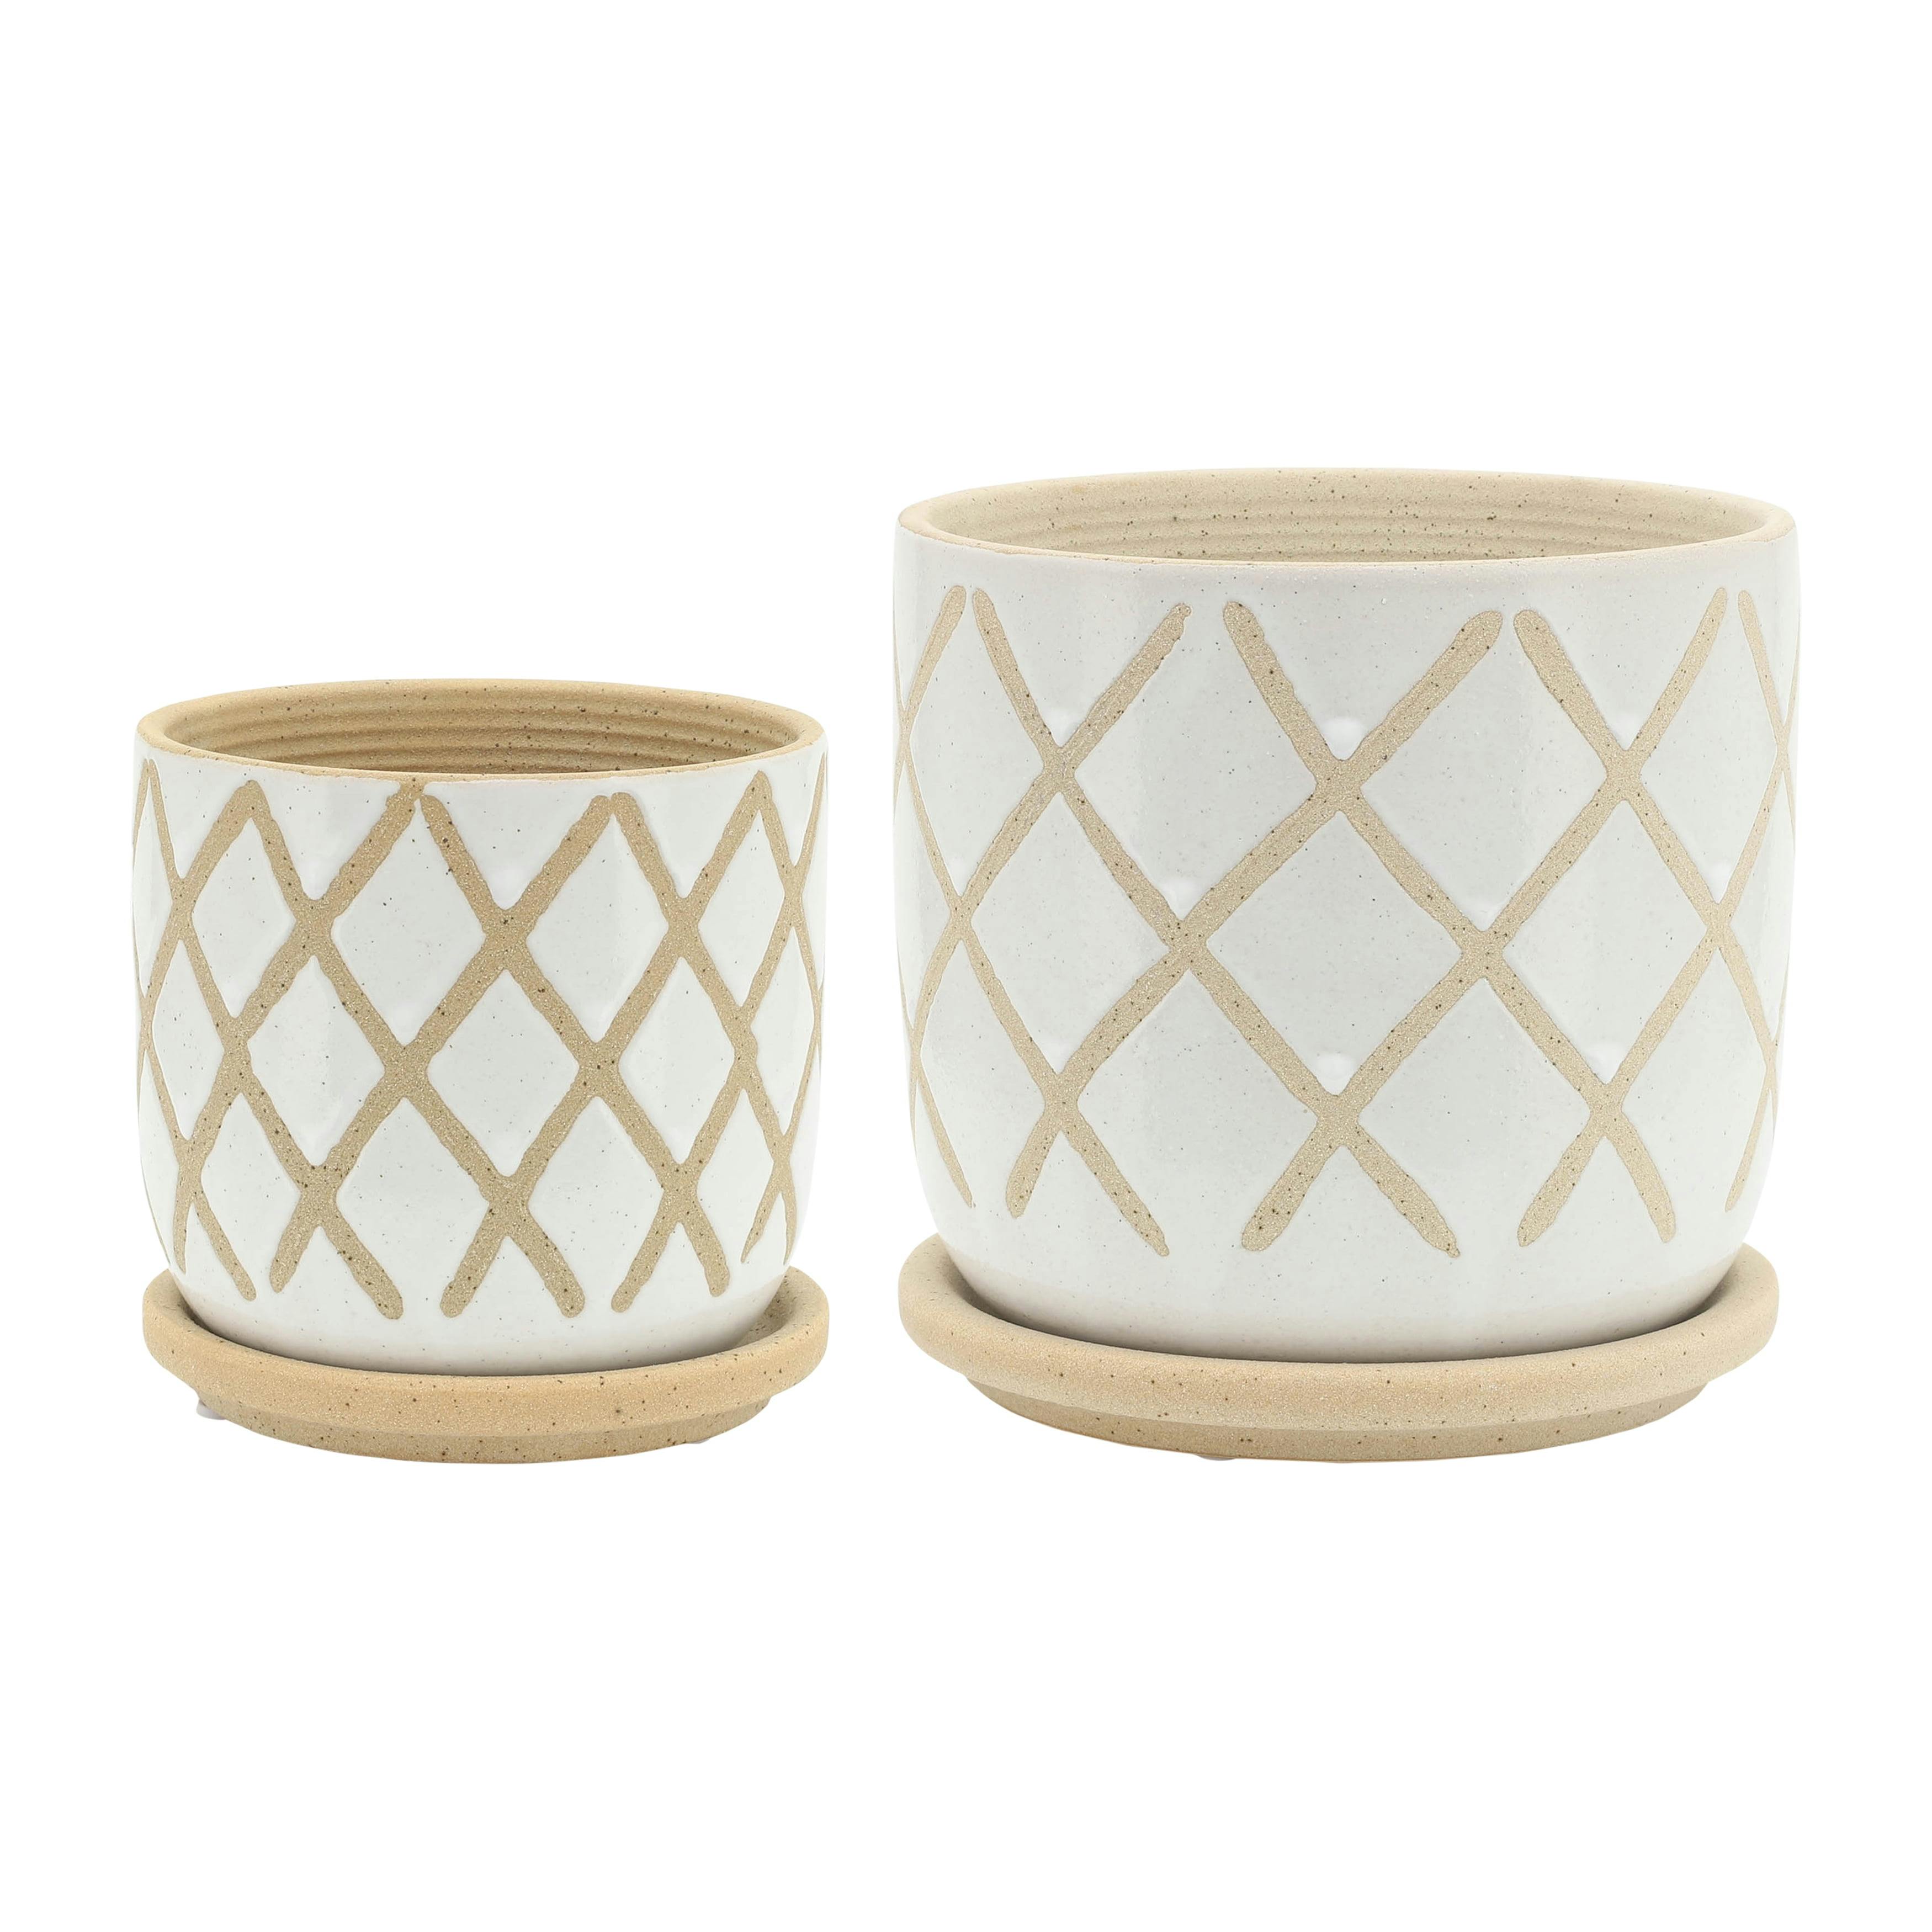 Contemporary White Ceramic 6" Cross Planter Set with Saucers